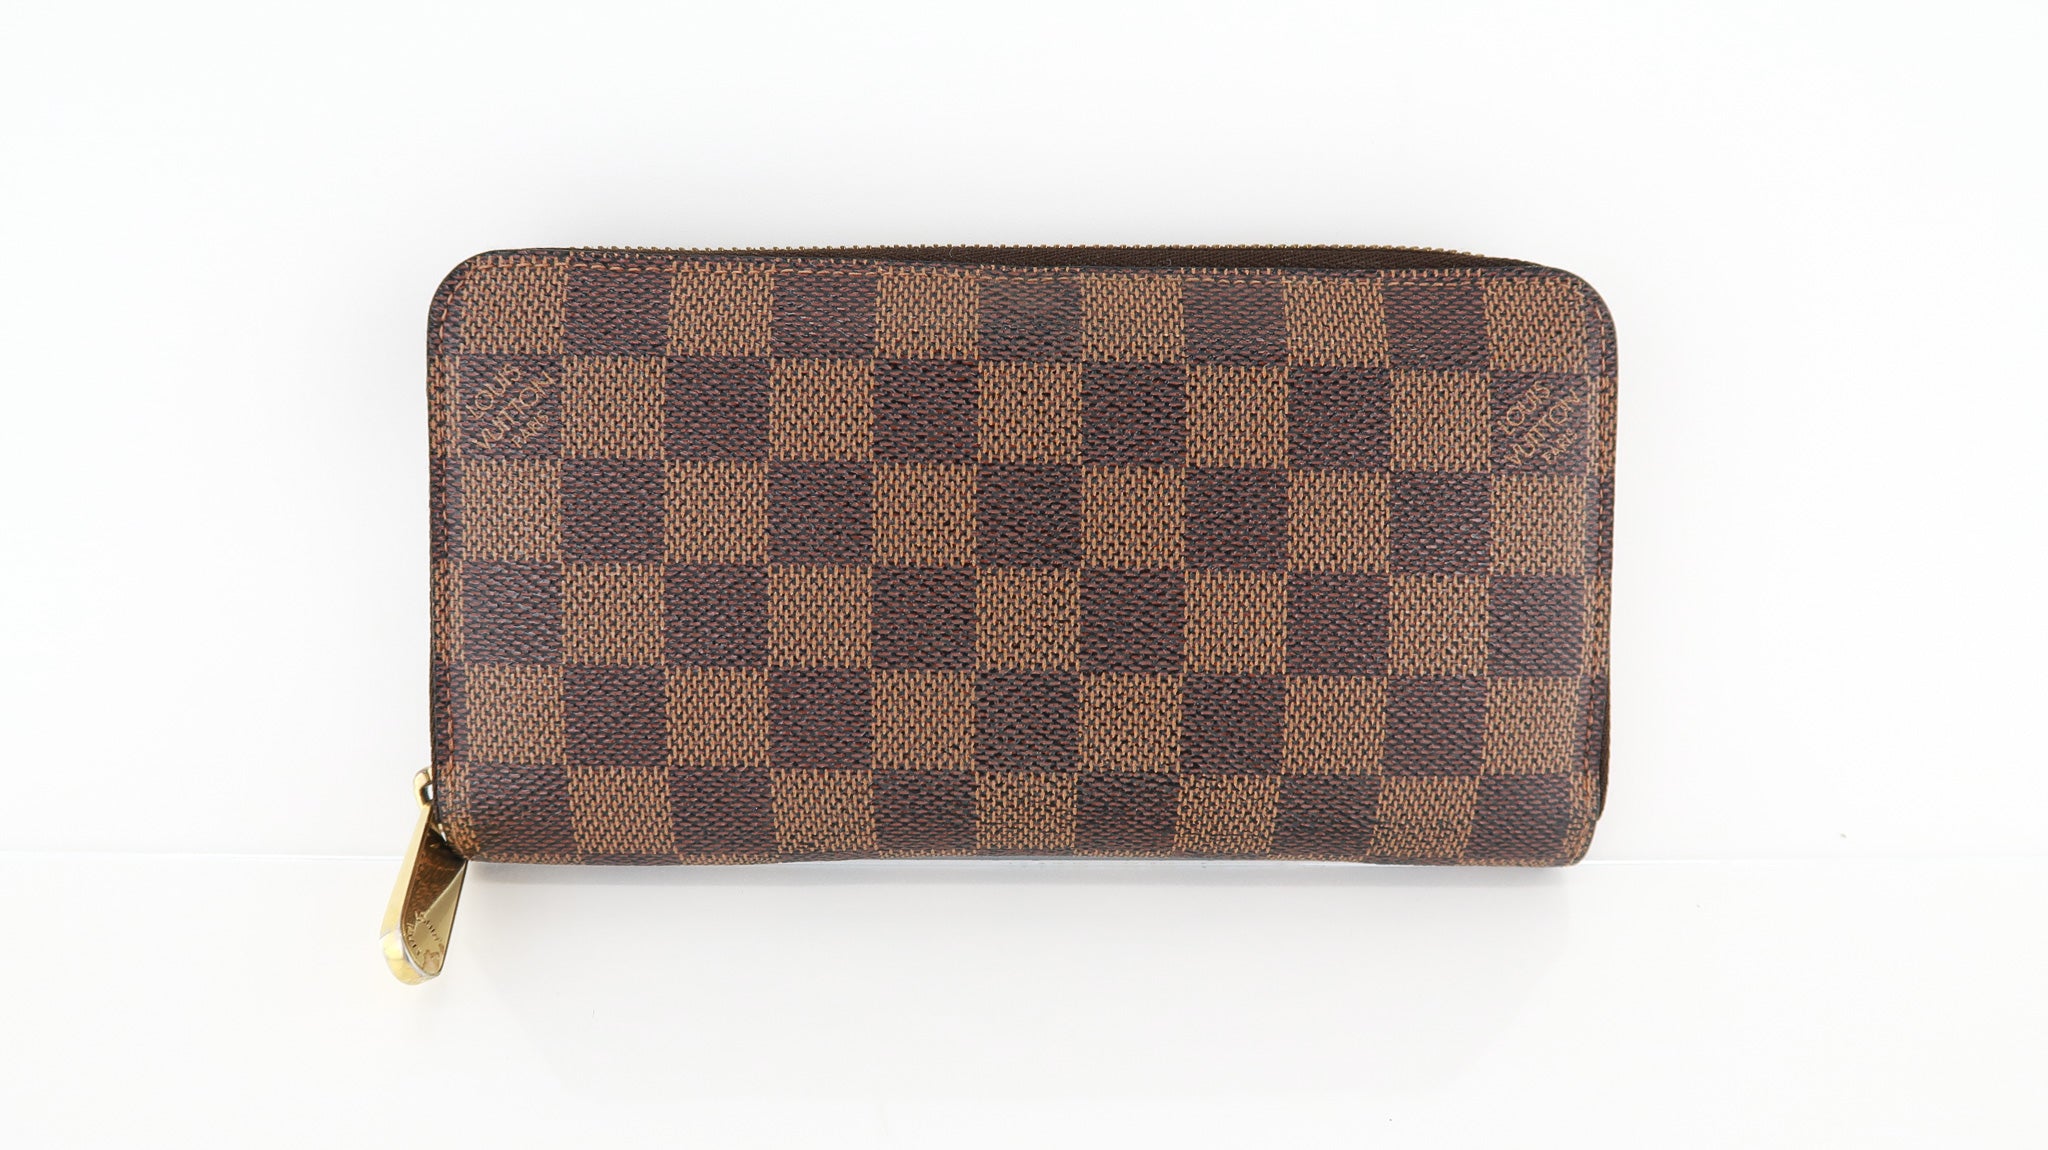 Louis Vuitton - Damier Ebene Zippy Wallet, Dust Bag included, Authentic